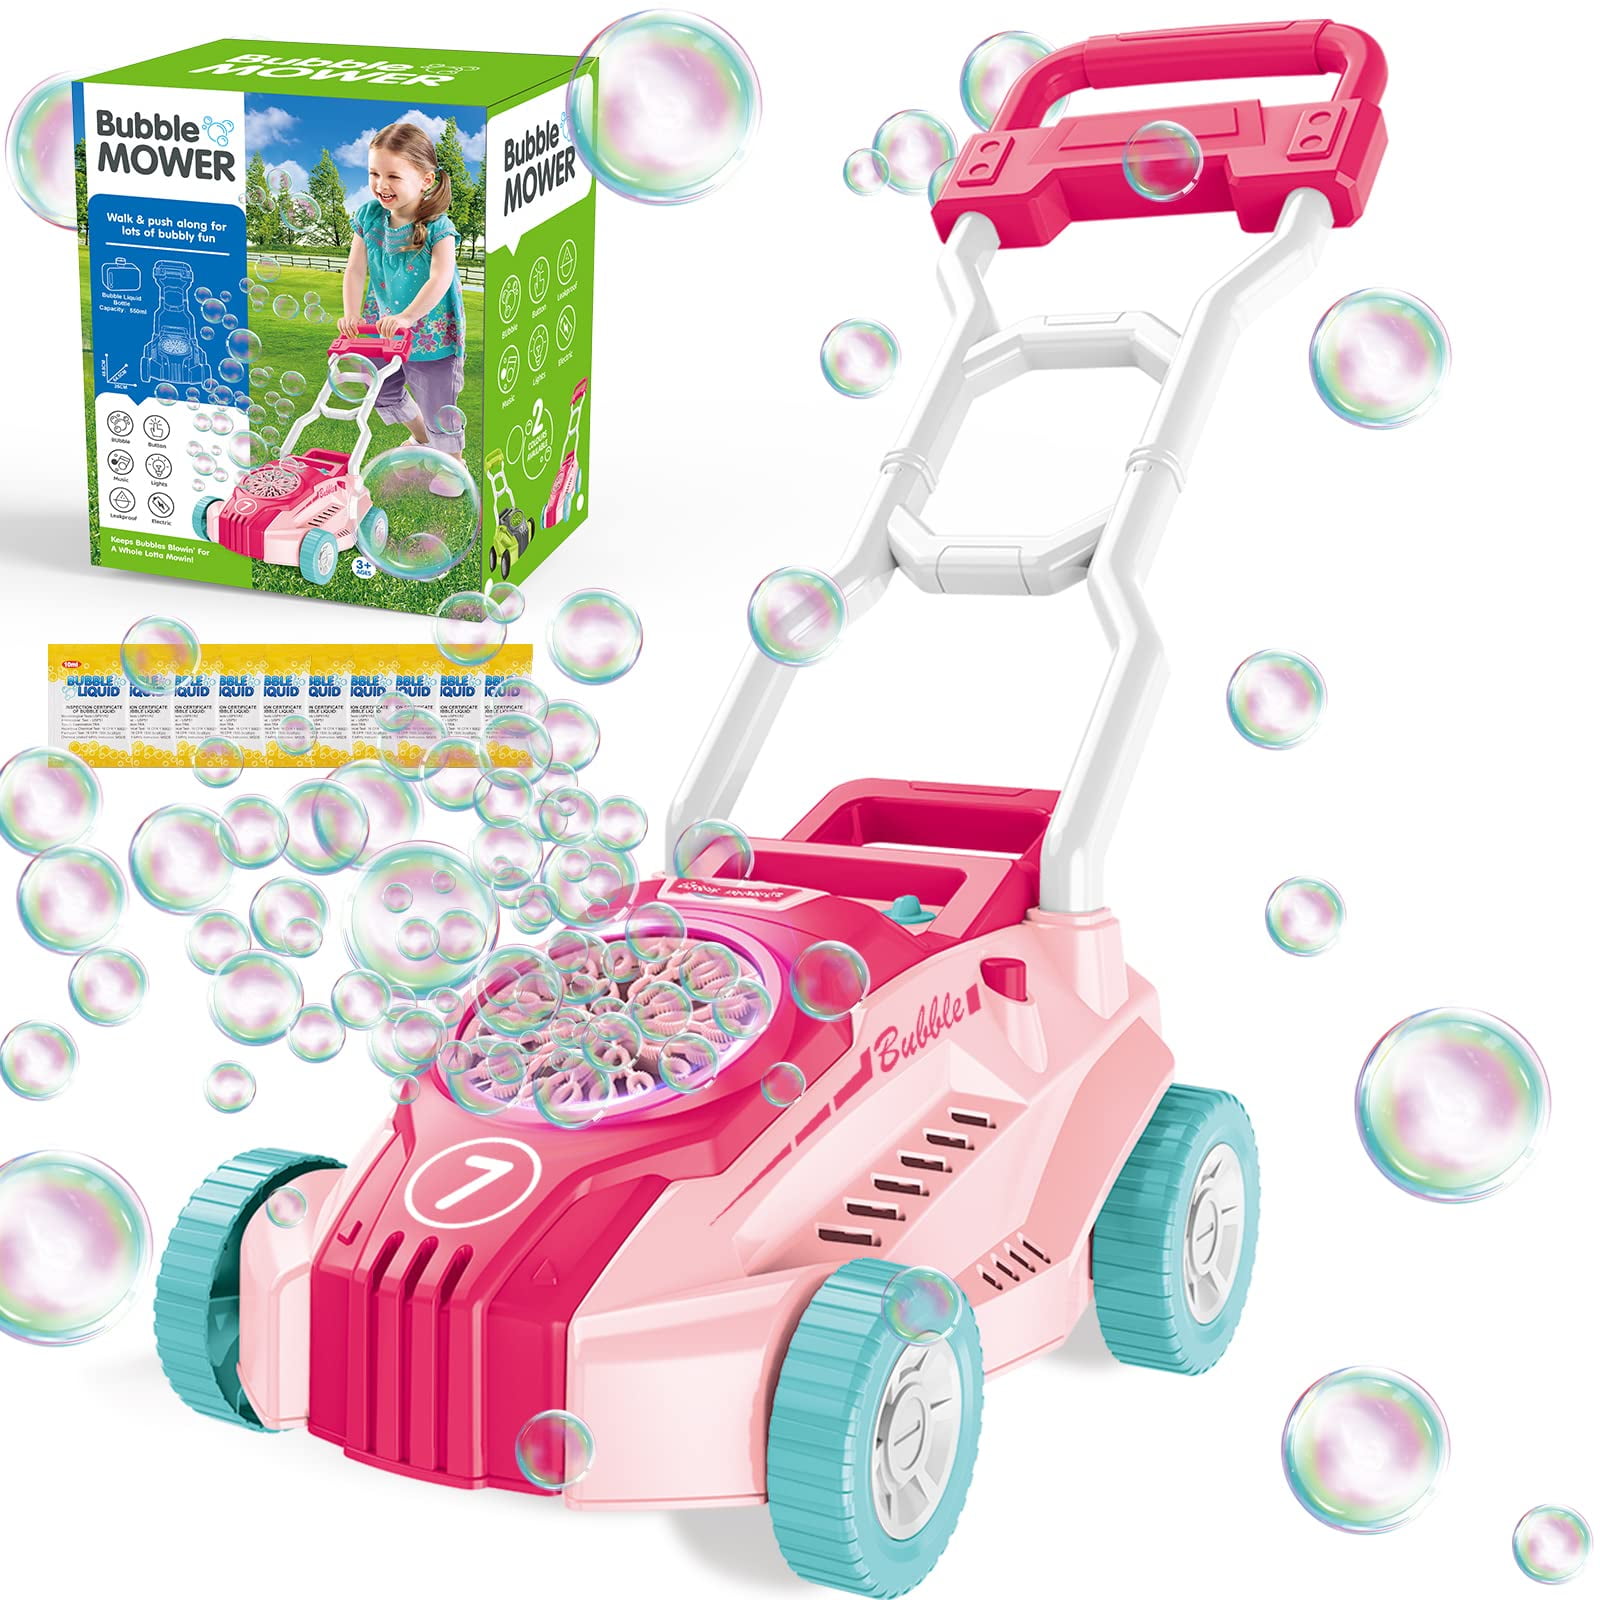 Bubble Gum Clicker: Auto spin wheel, auto blow bubble, auto claim daily  gifts